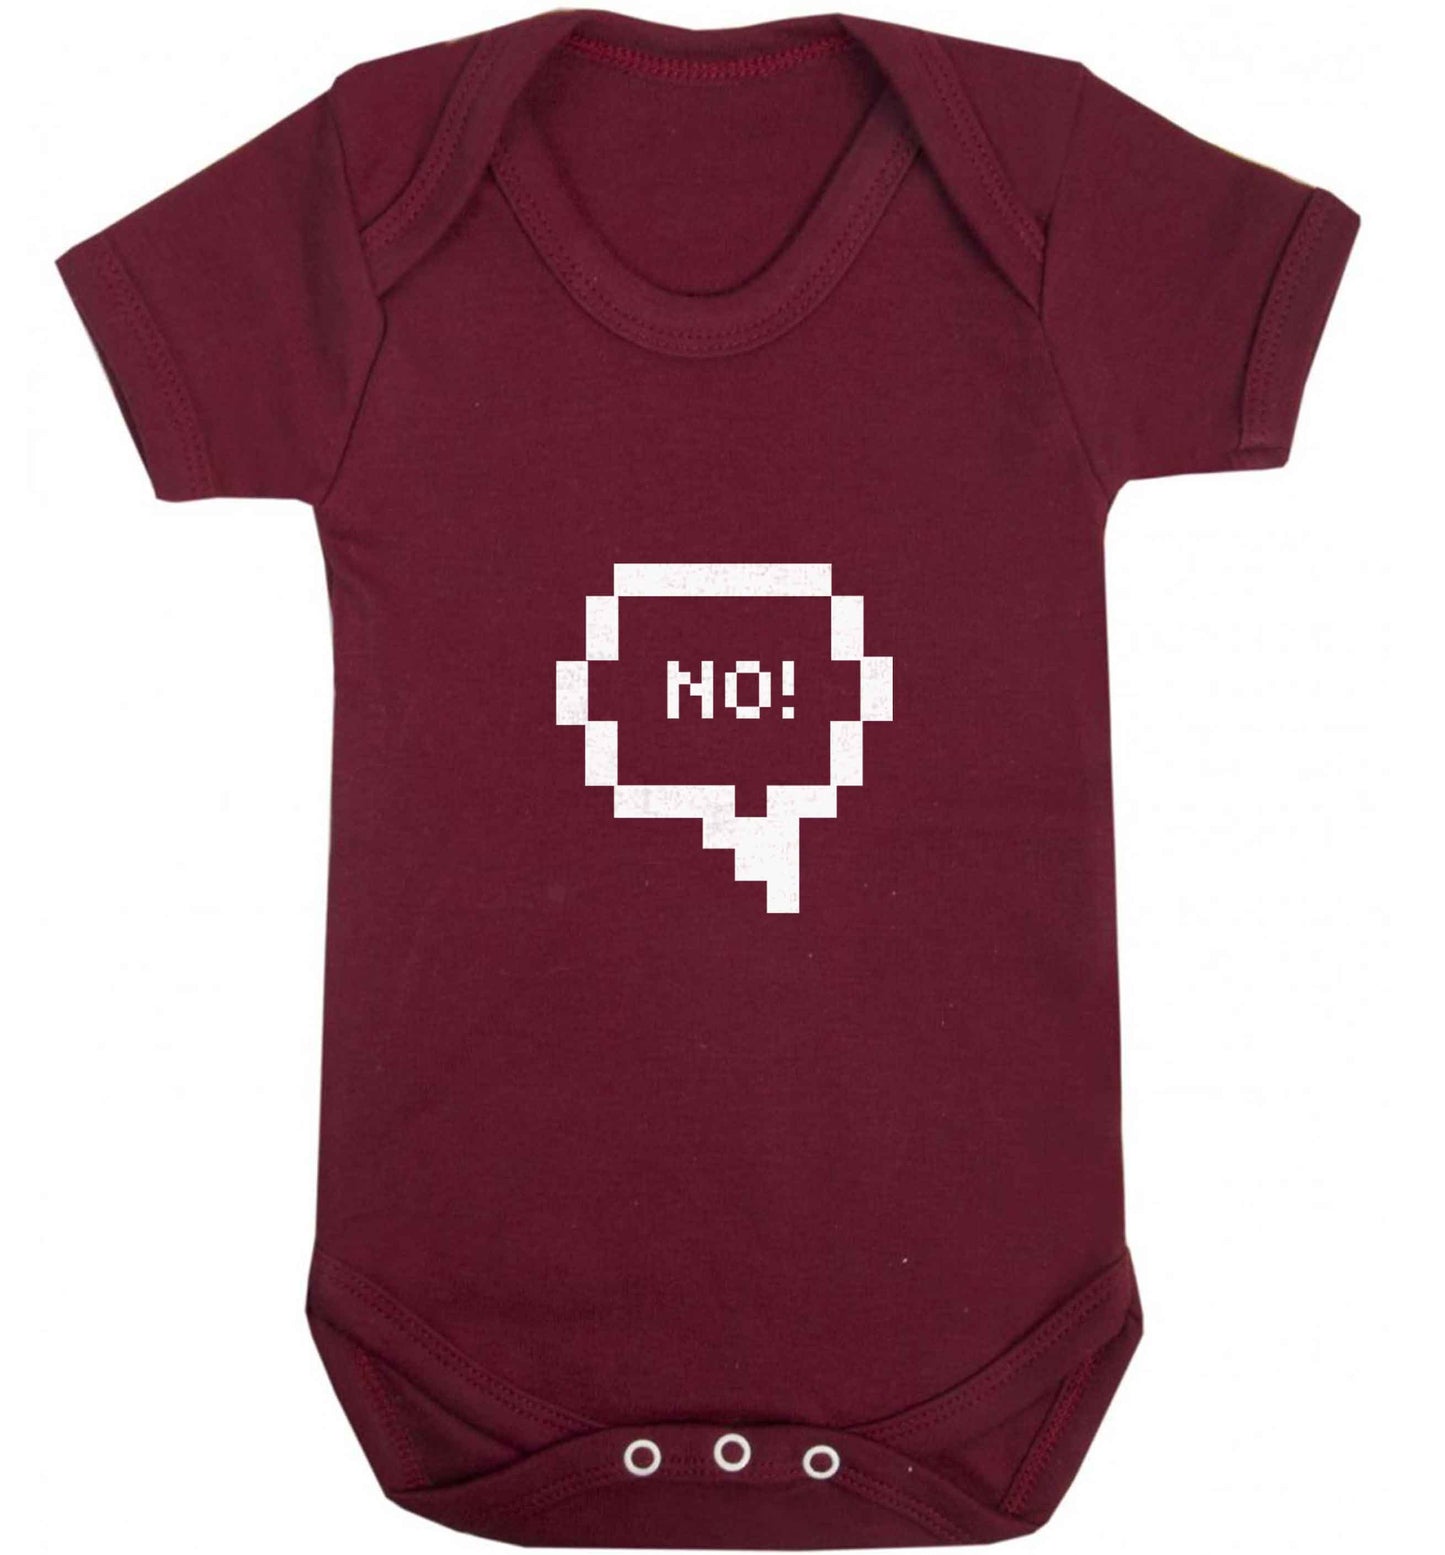 No baby vest maroon 18-24 months